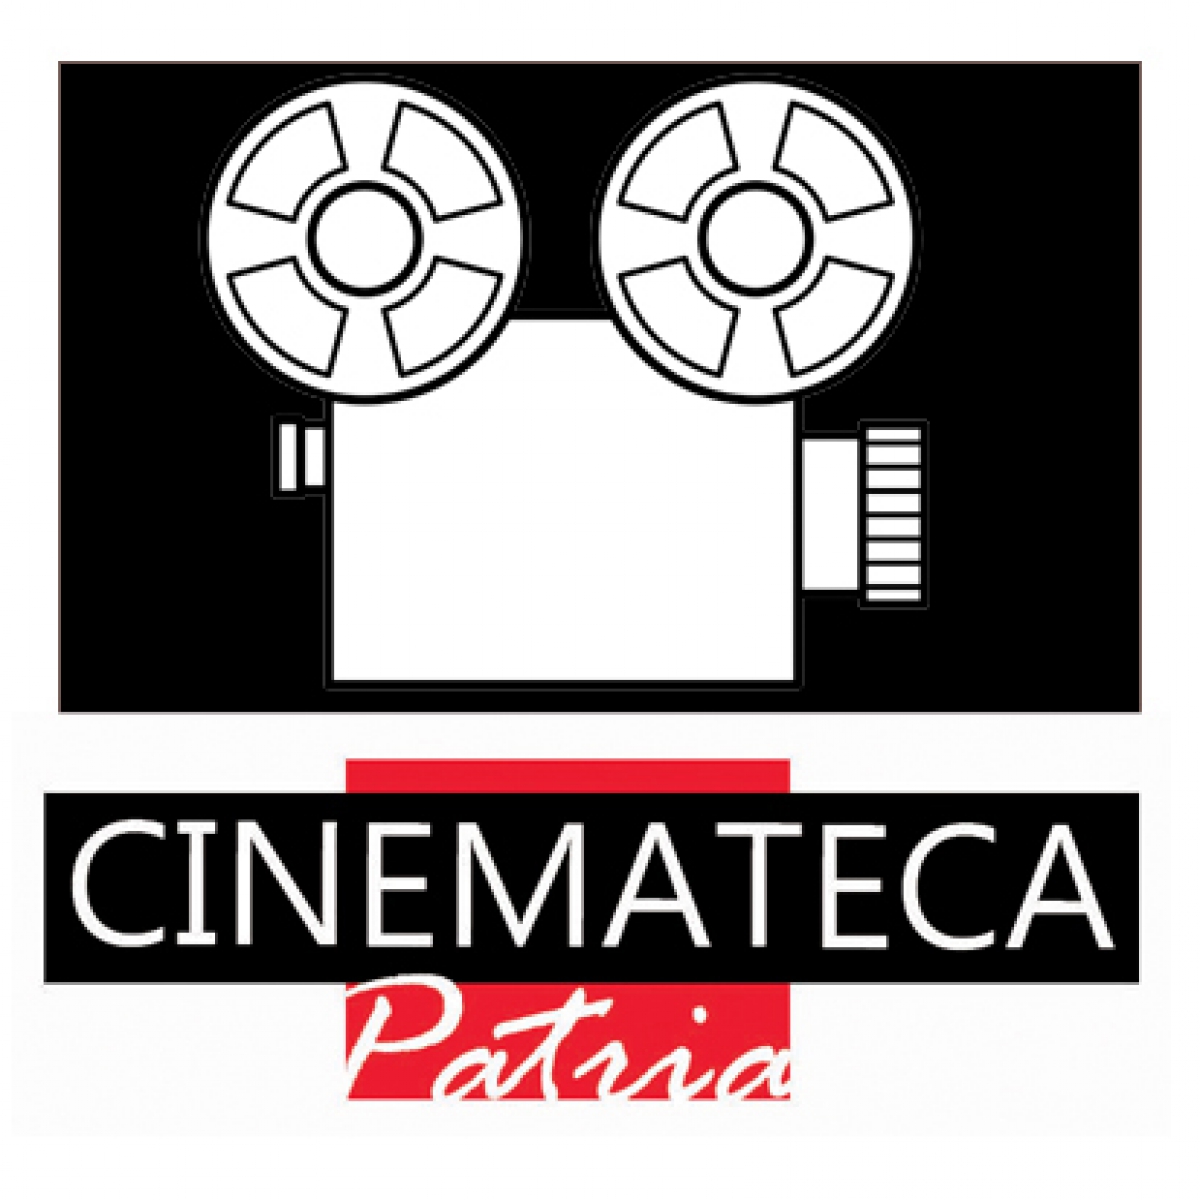 Cinemateca Patria